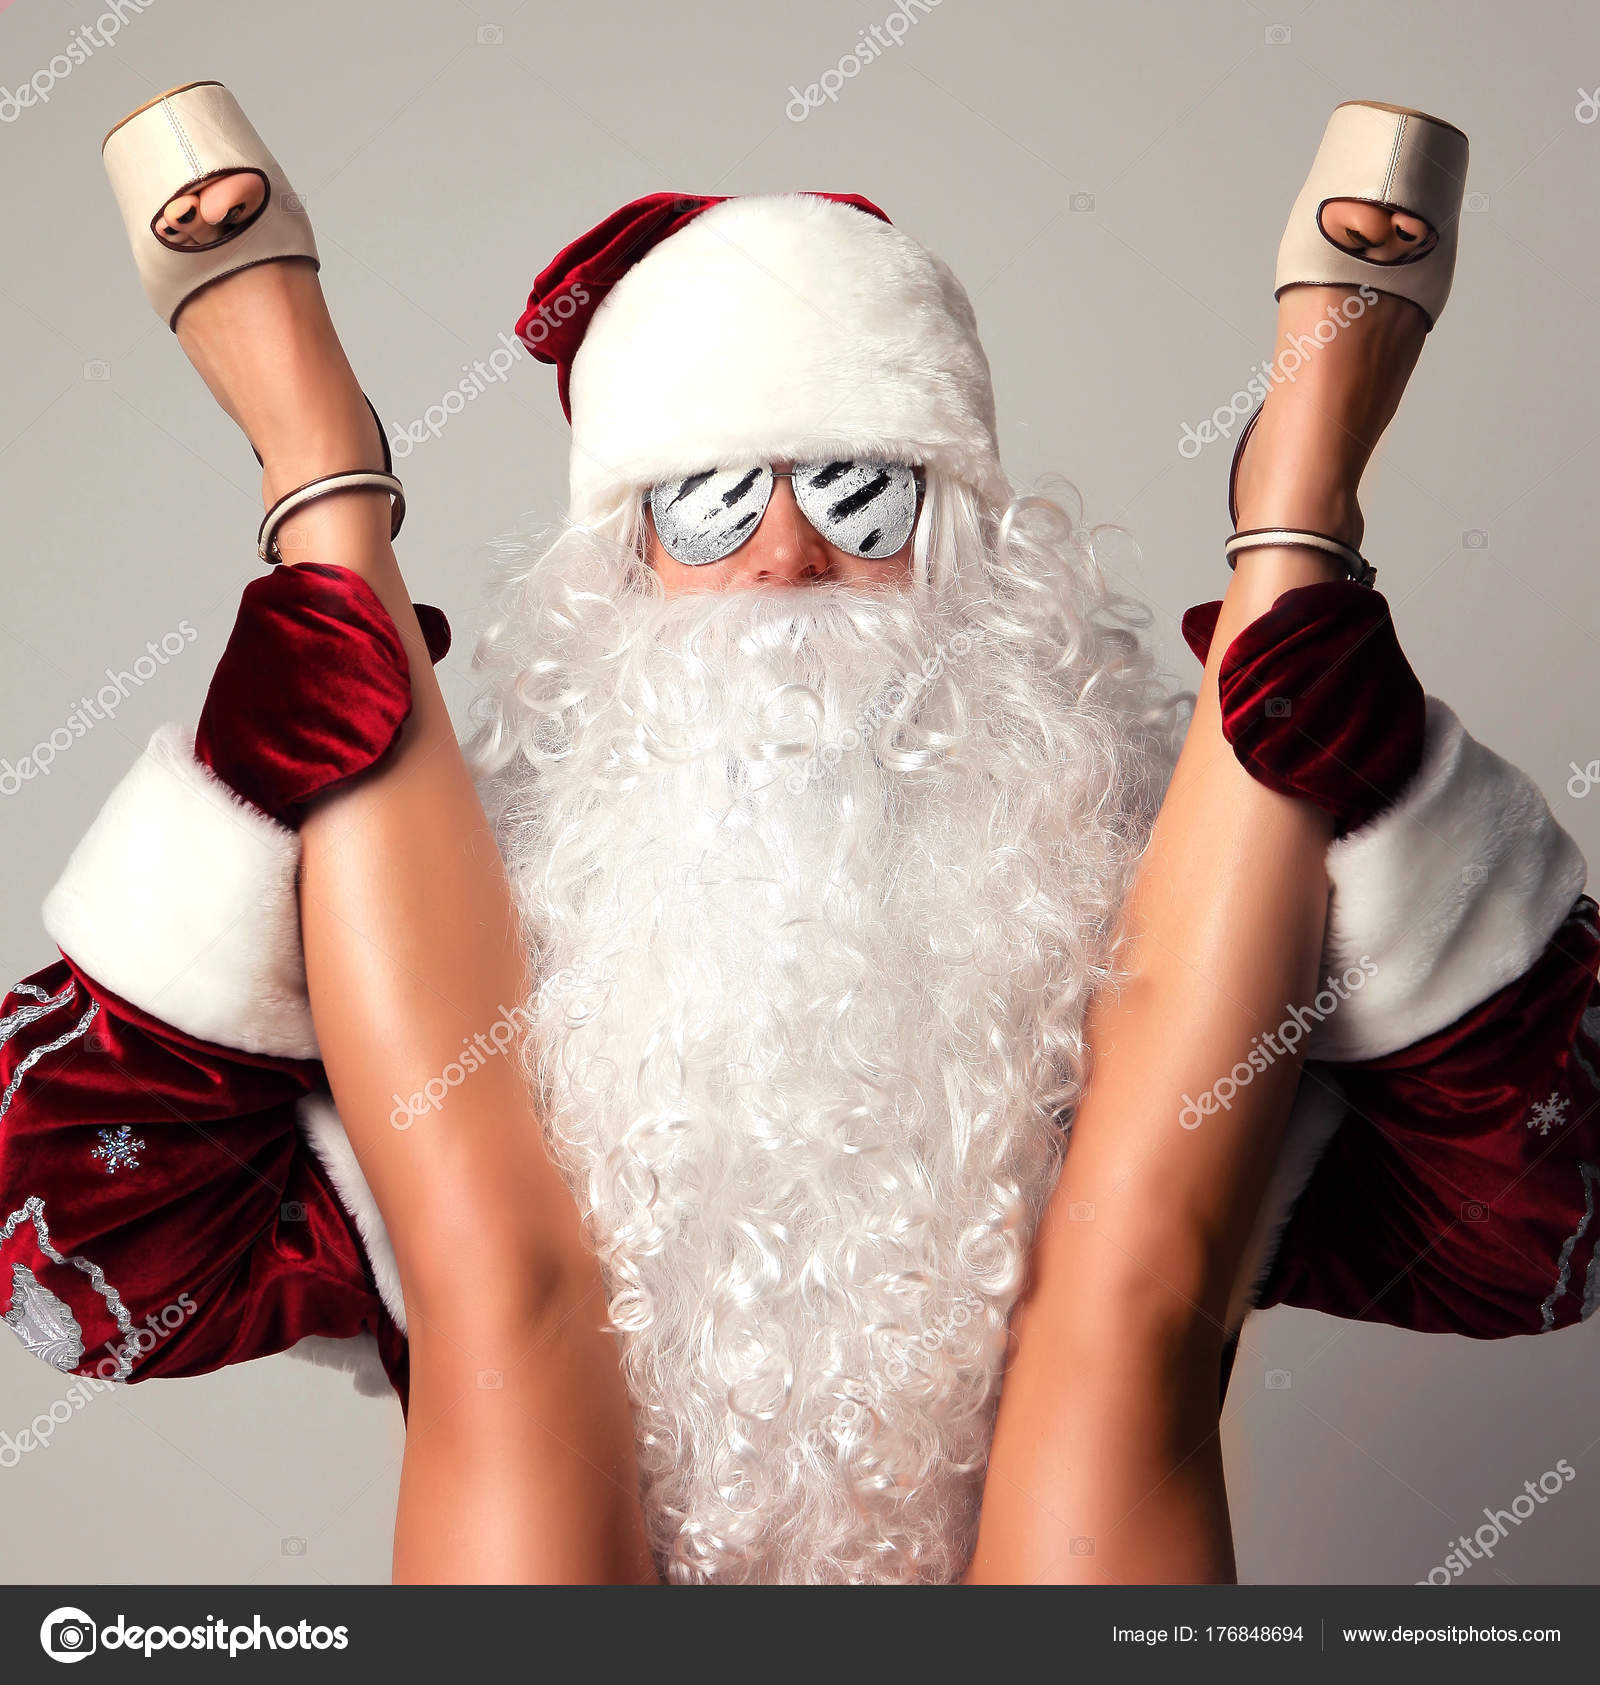 Bad Santa nude photos